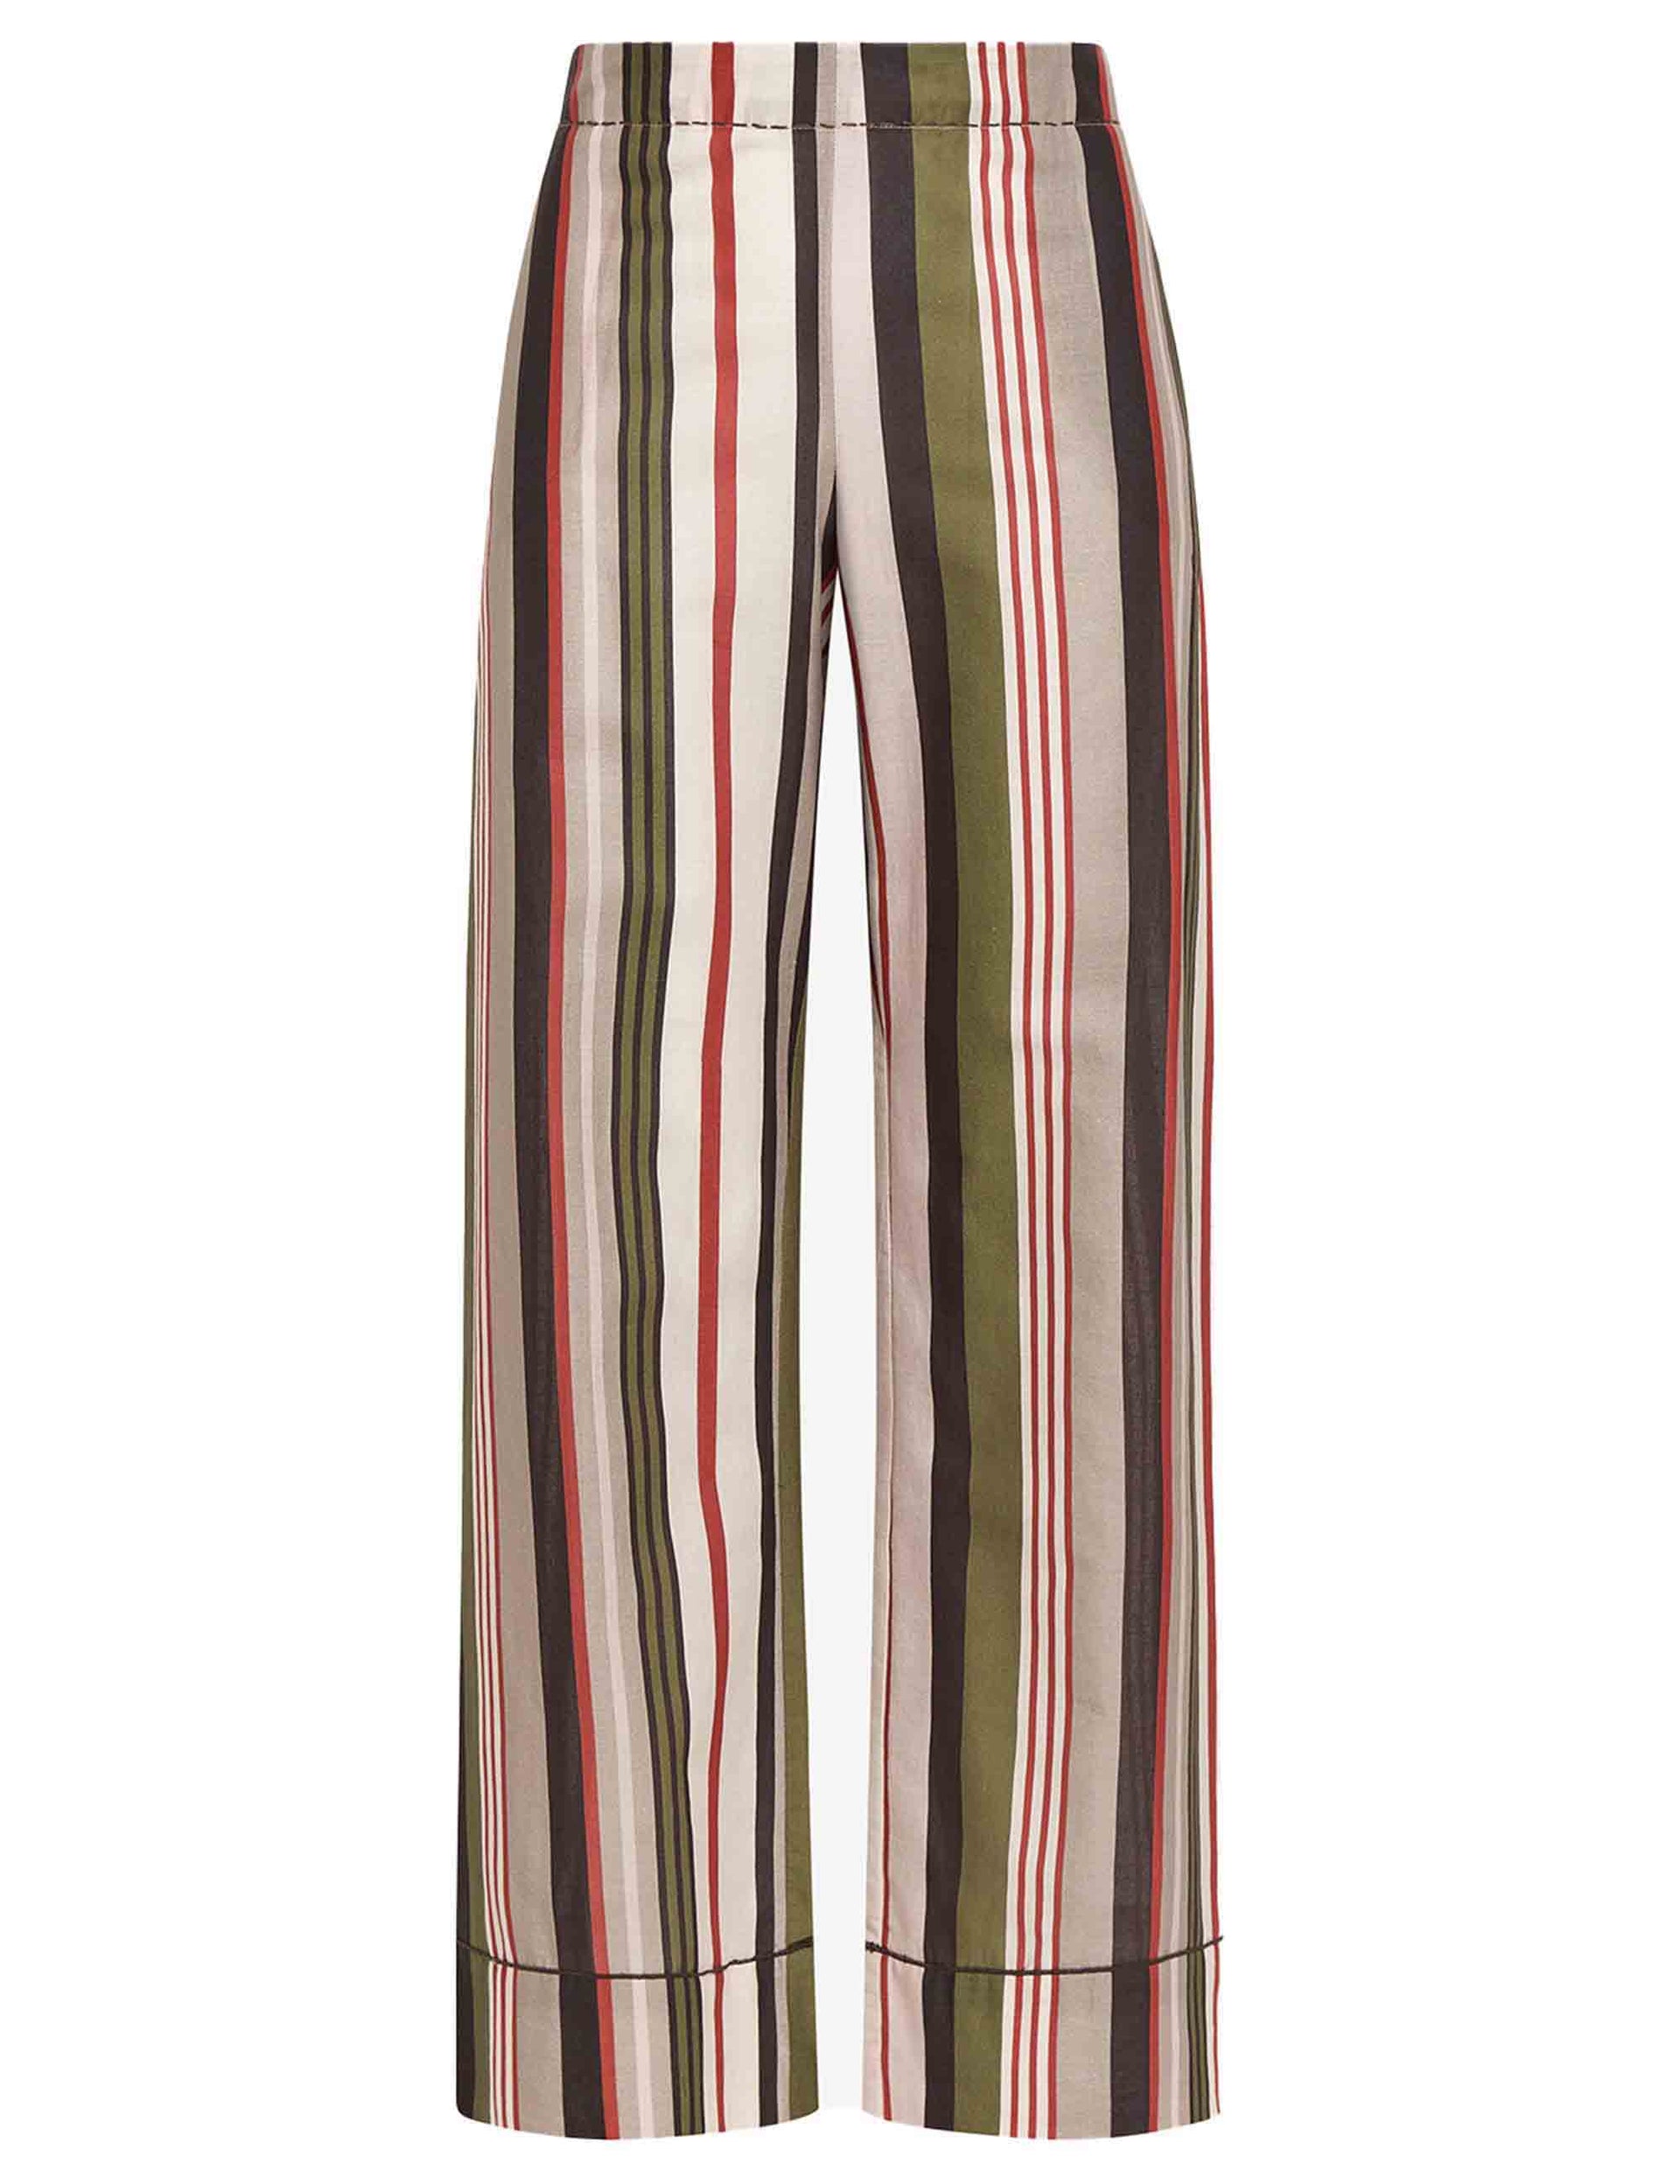 Mari Stripes Muslin women's trousers in beige patterned cotton